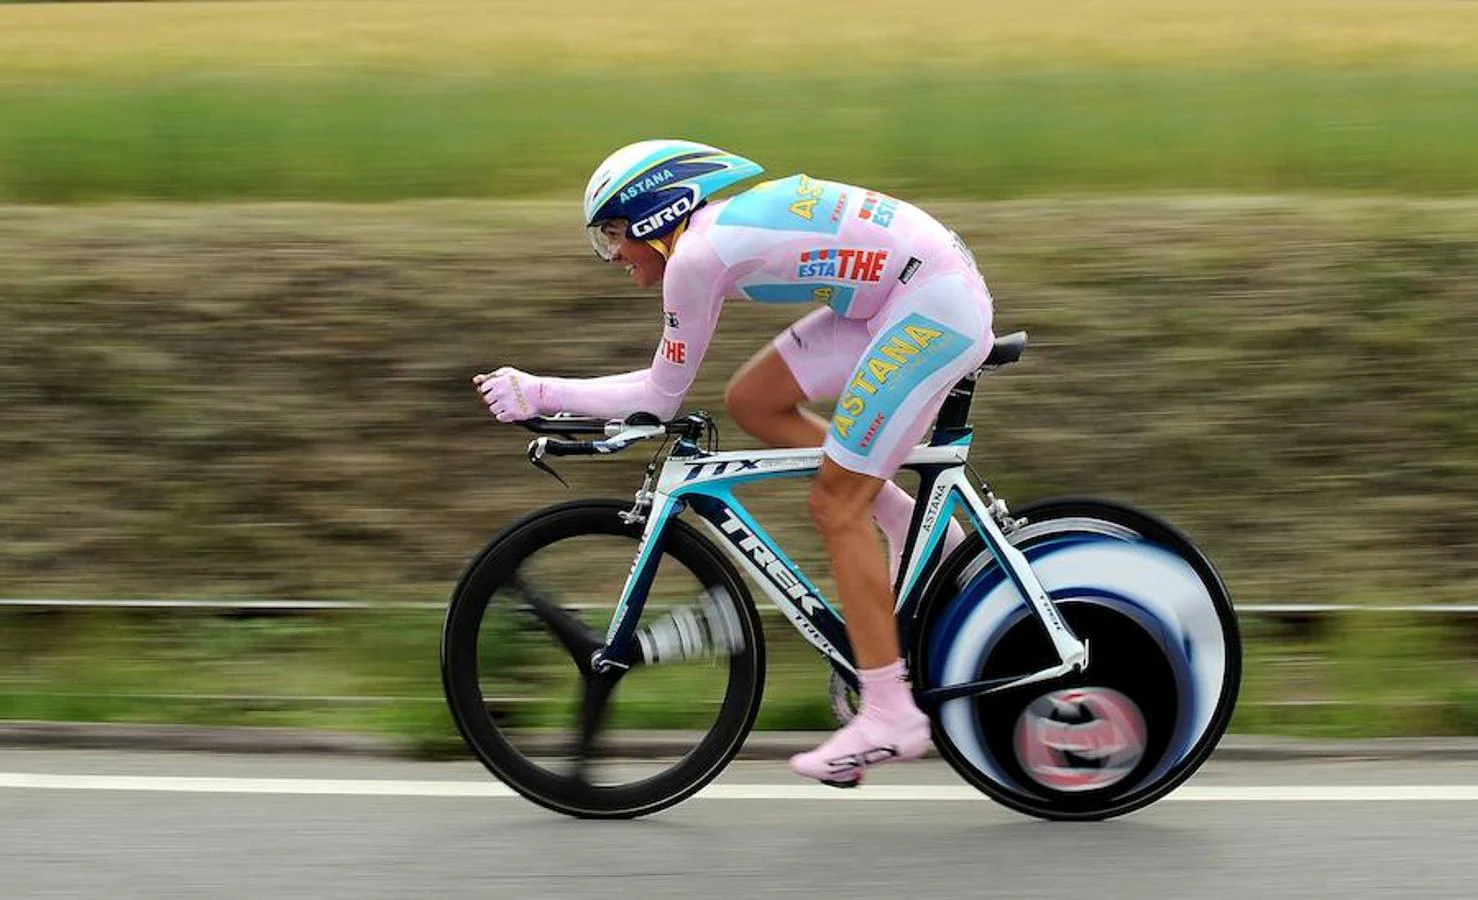 Giro de Italia 2008. 